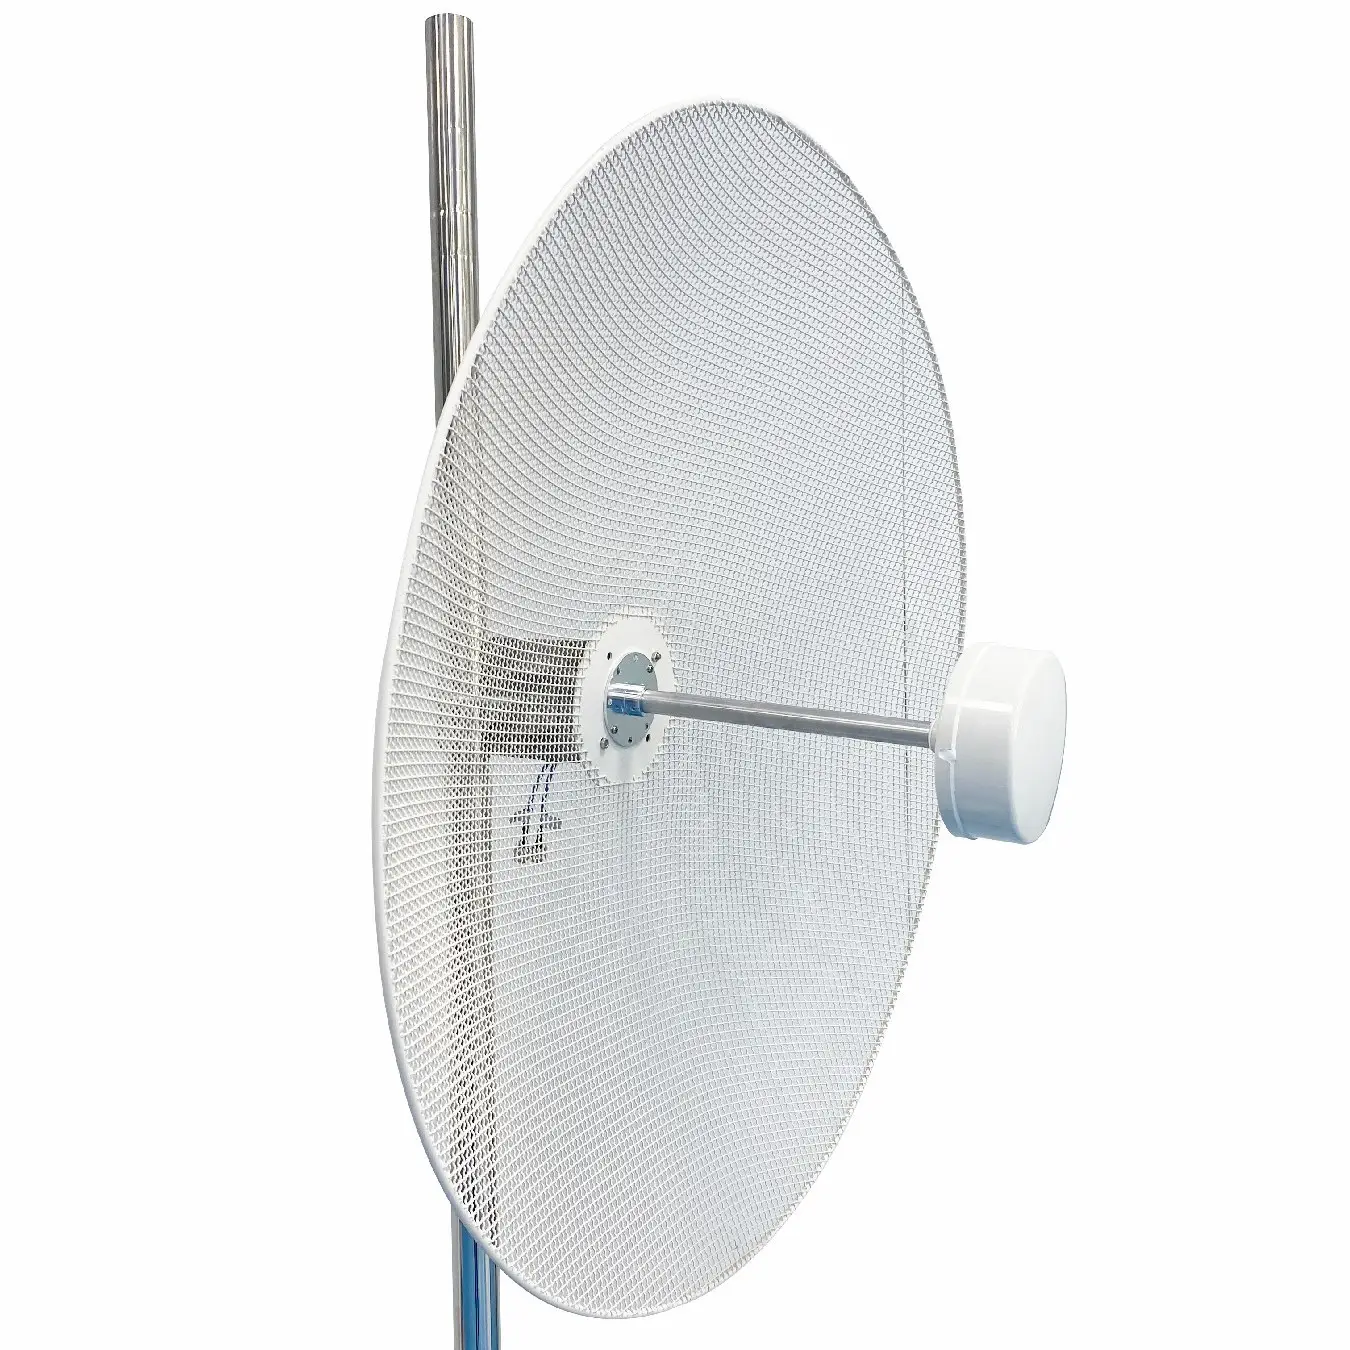 Antena luar ruangan 50km, jangkauan WiFi jarak jauh 5G, 4G LTE, antena parabola akses jaringan 3G